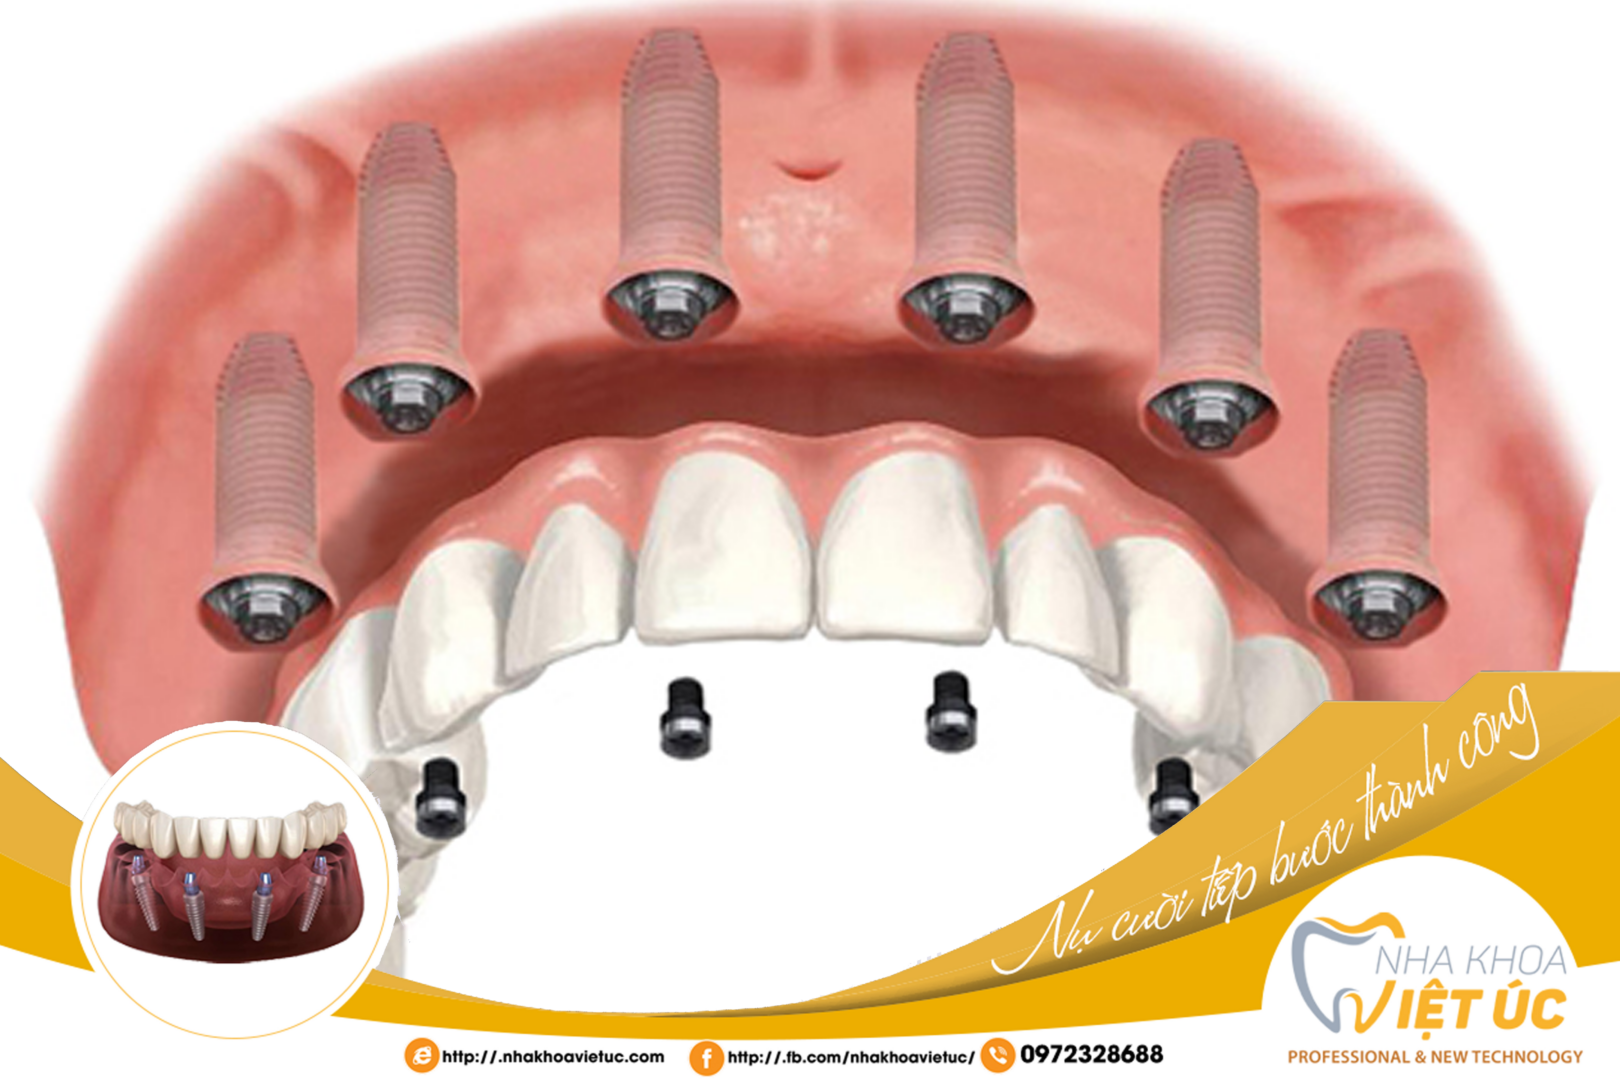 Trồng răng Implant toàn hàm All-on-6 thường sẽ được Bác sĩ chỉ định cho cô chú/anh chị tùy theo tình trạng xương hàm và vùng xương hàm